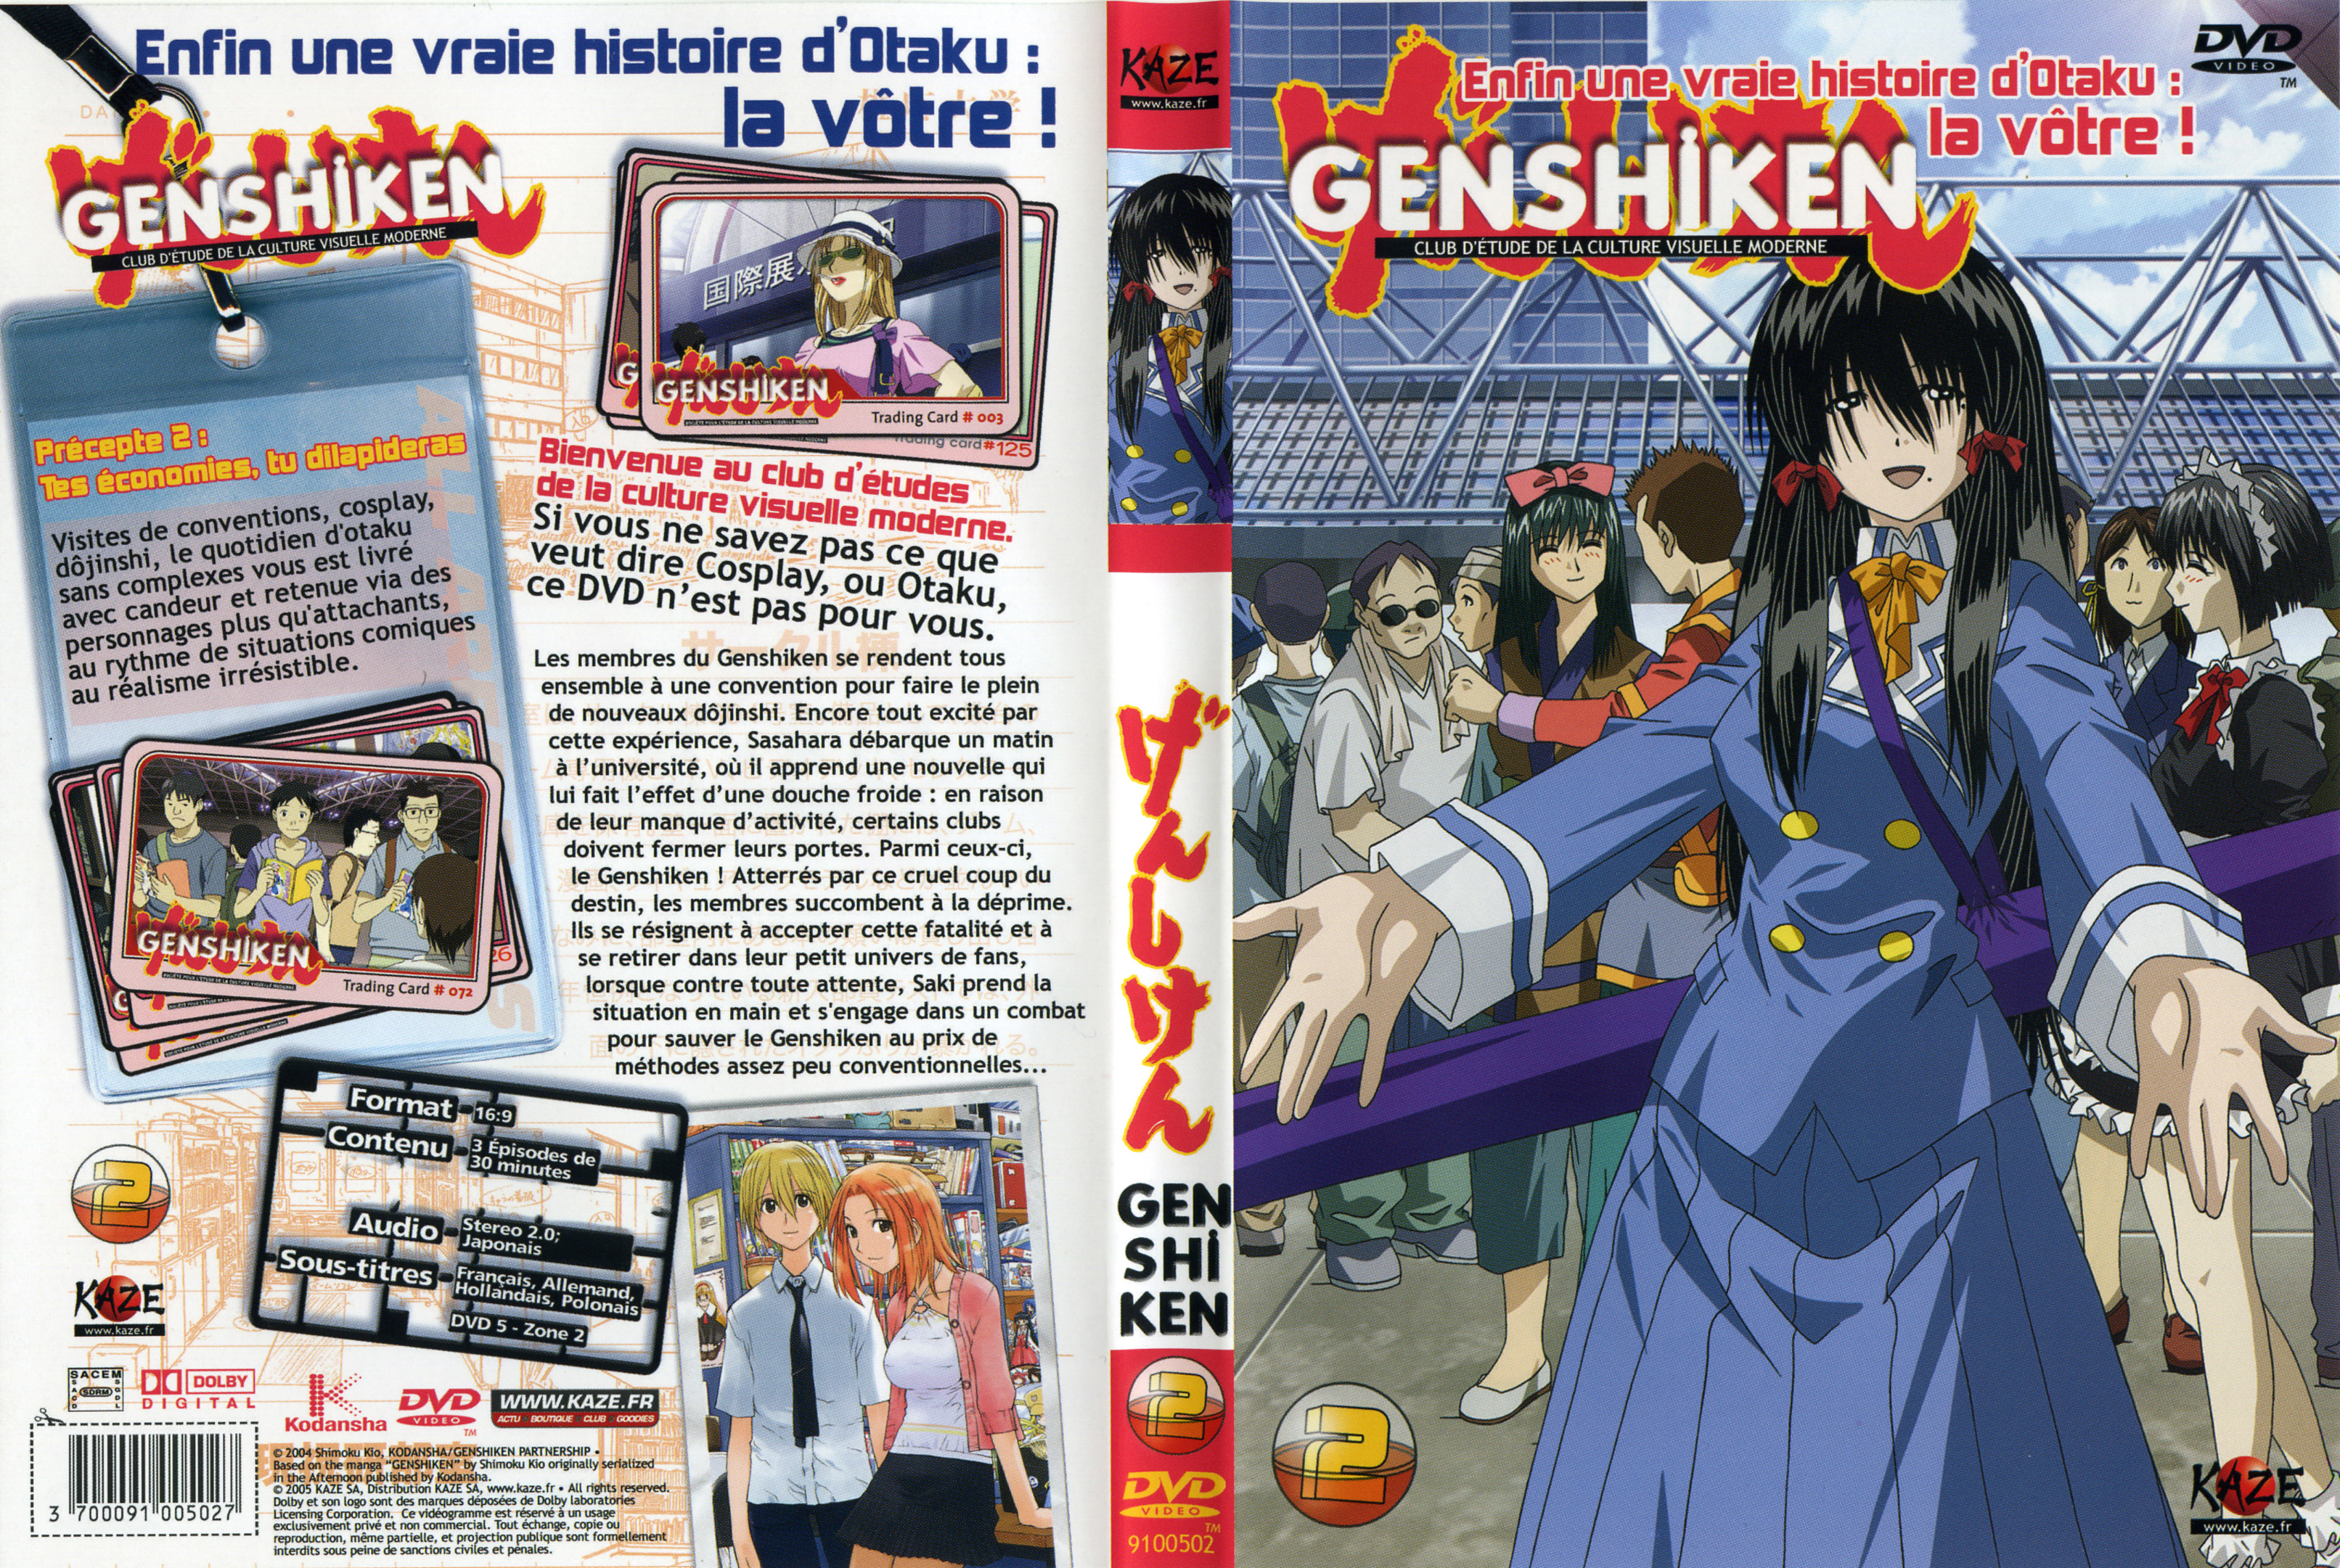 Jaquette DVD Genshiken vol 02